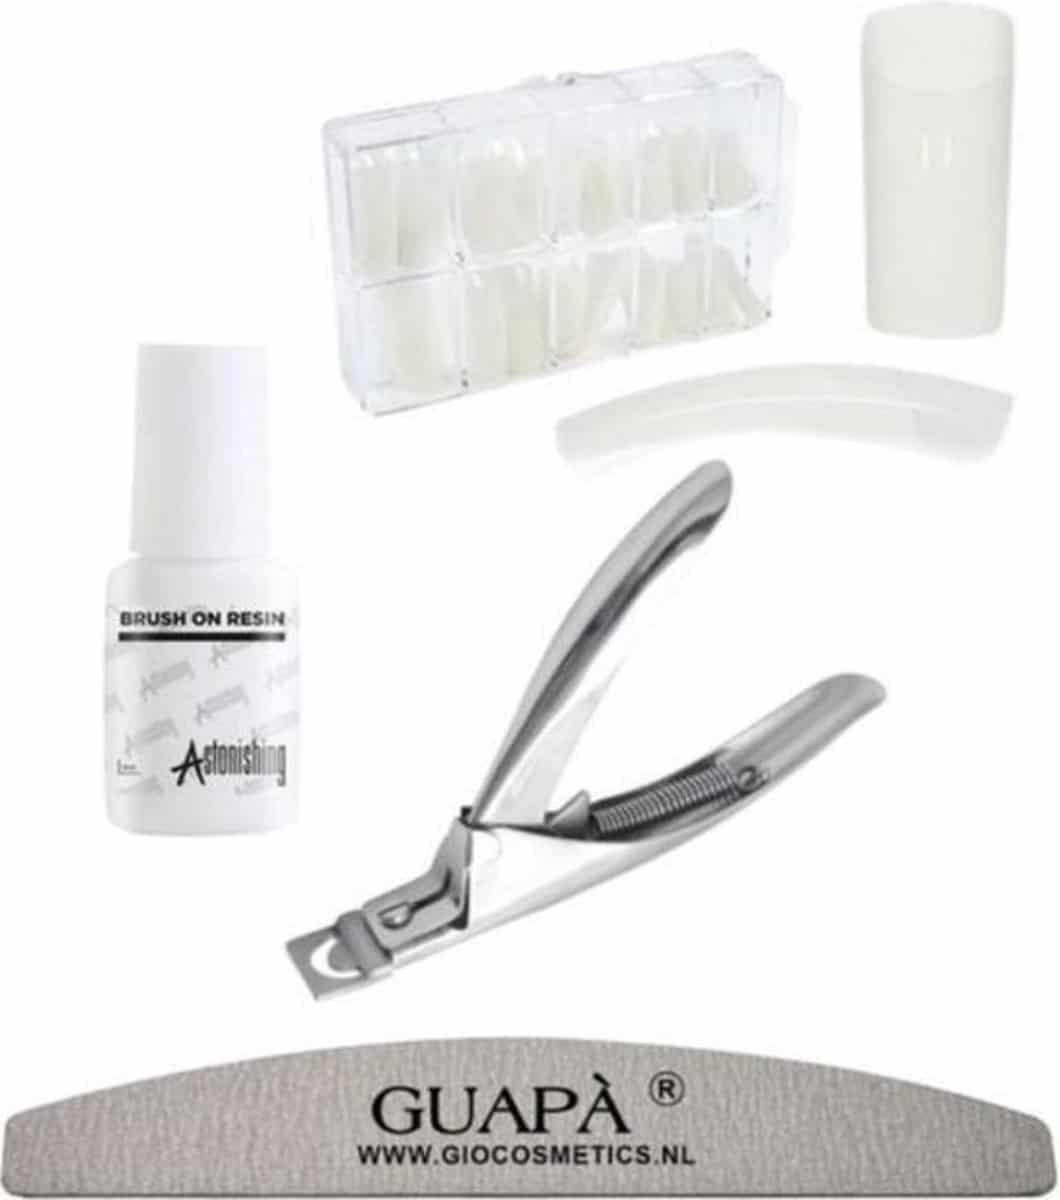 GUAPÀ - Kunstnagel Set voor het zetten van Nagelverlenging - 500 stuks Naturel + 5 ml nagellijm + Tipknipper en Nagelvijl - Acrylnagels - Tips - Nepnagels pakket